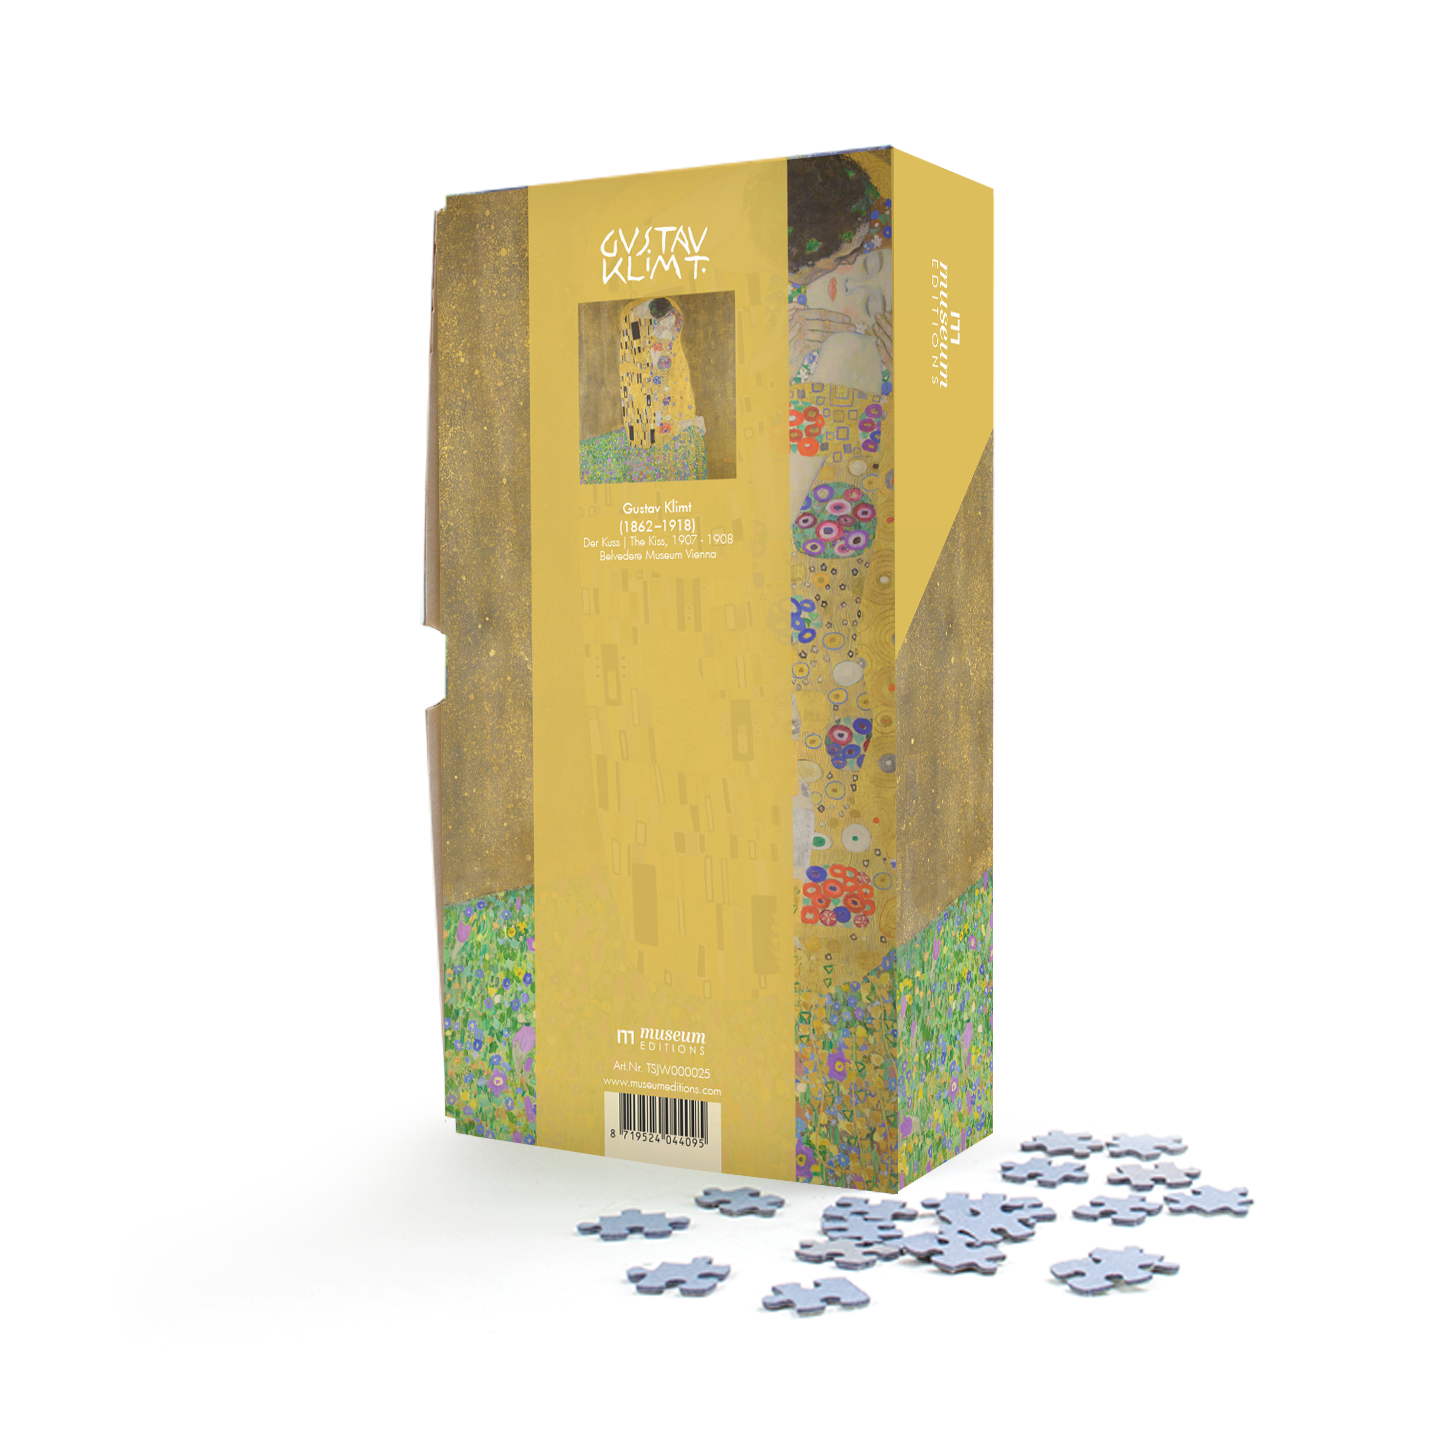 Puzzle, 1000 Pieces, Klimt, The Kiss